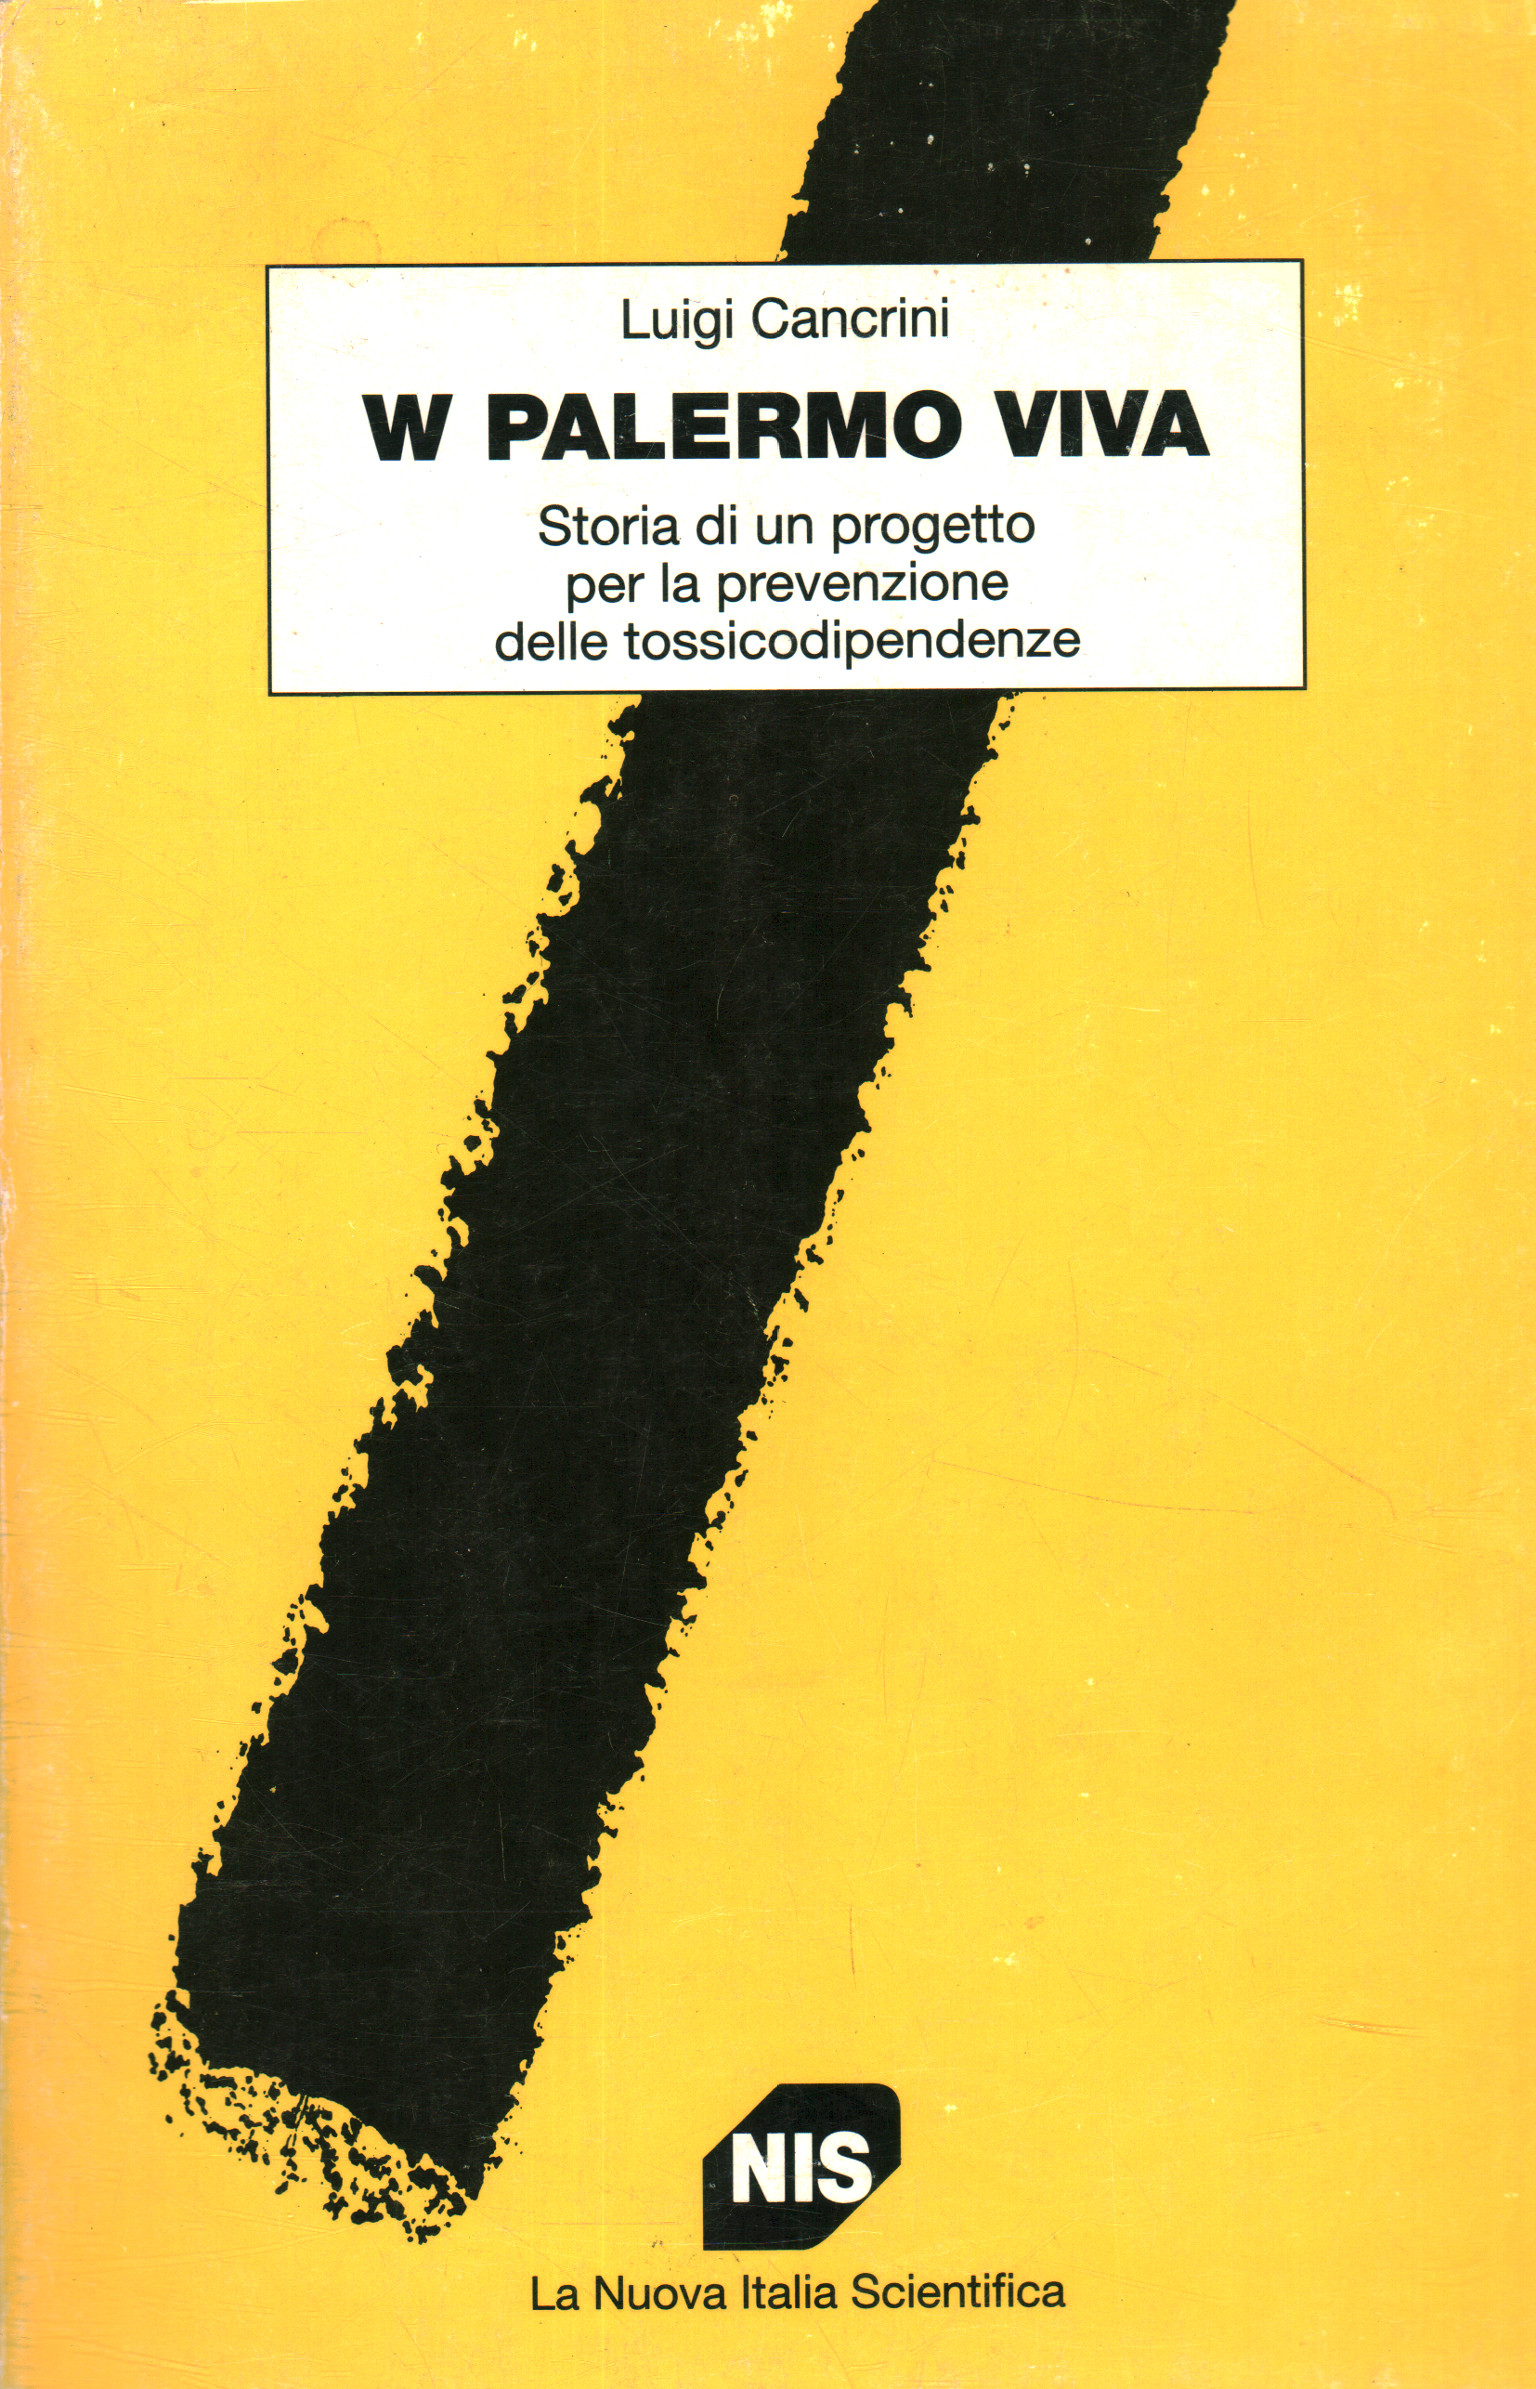 W Palermo viva